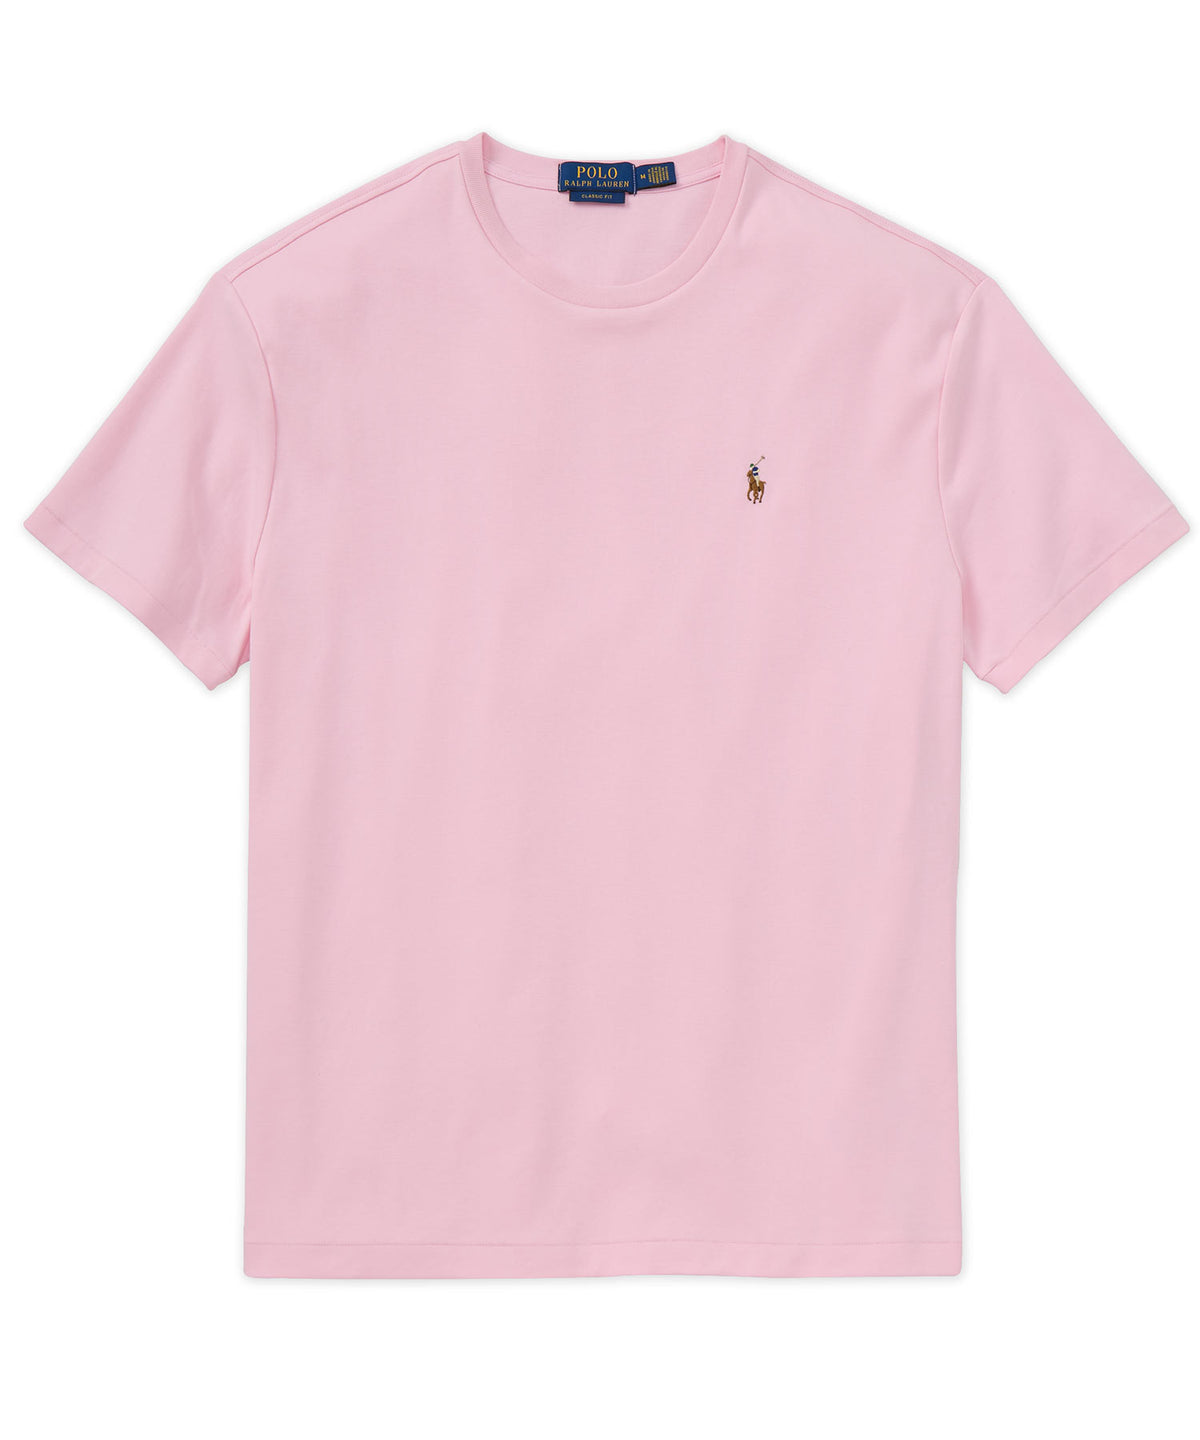 Polo Ralph Lauren Short Sleeve Soft Touch Cotton T-Shirt, Men's Big & Tall